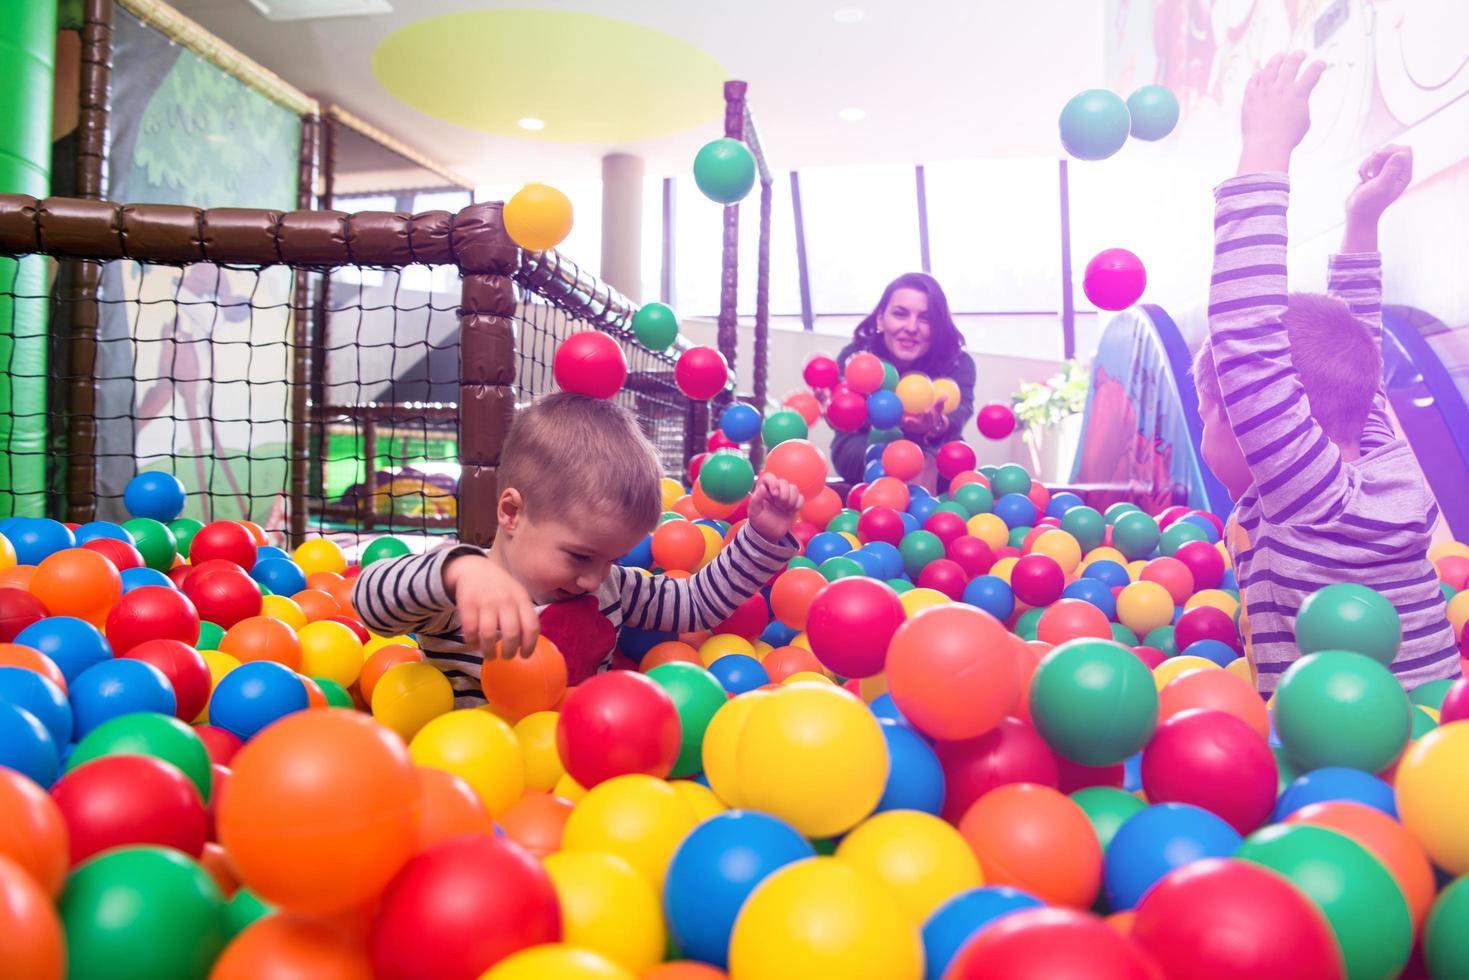 jovem mãe brincando com crianças na piscina com bolas coloridas foto